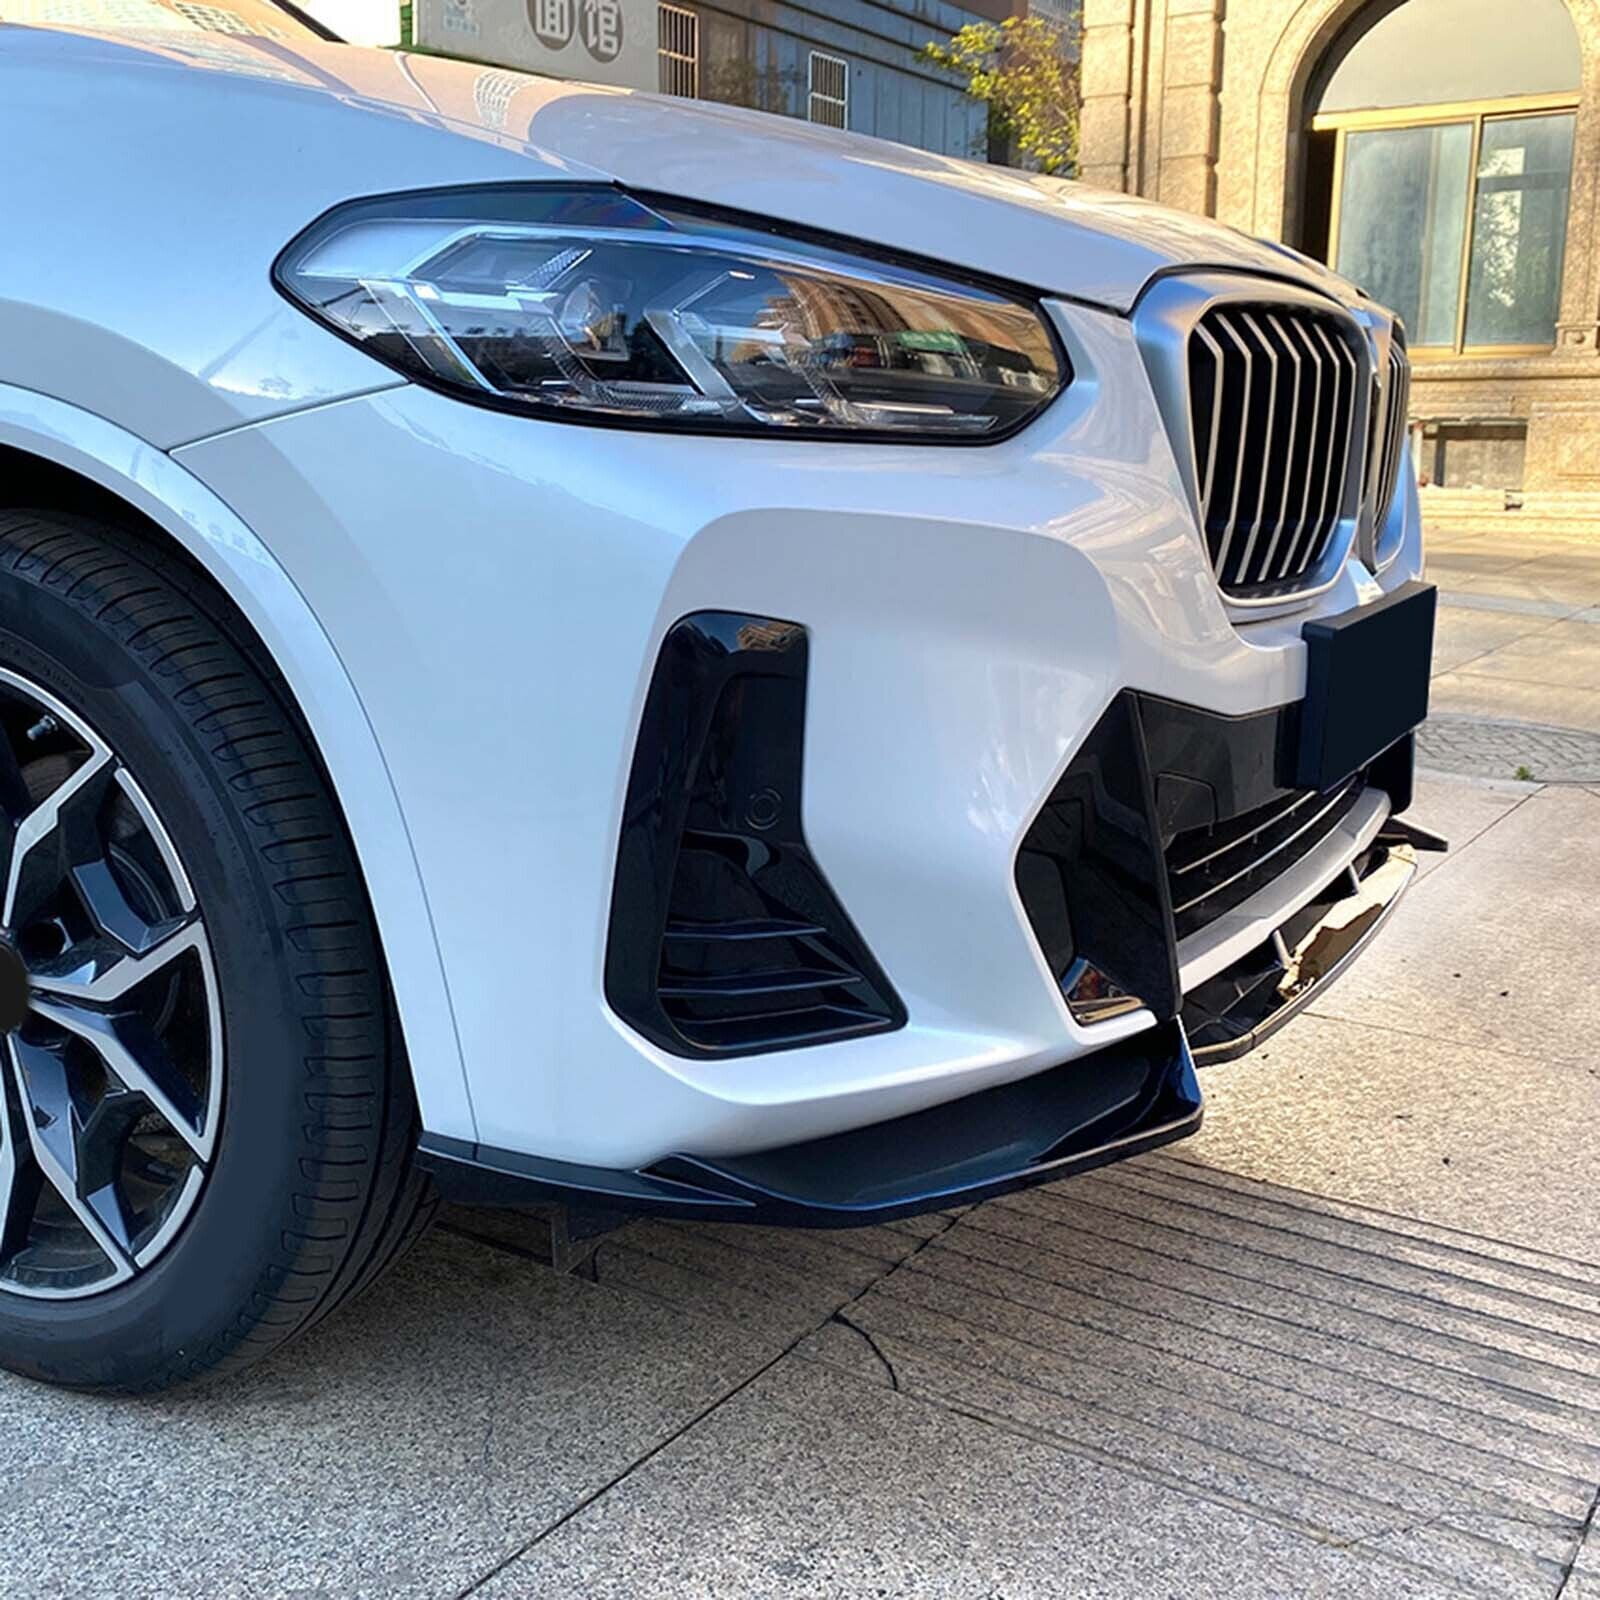 Für BMW G01 G02 X3 X4 ABS Auto Front Stoßstange Splitter Lip Diffusor  Spoiler Schutz Abdeckung Schutz Deflektor Lippen 2017-2021 M-sport -  AliExpress